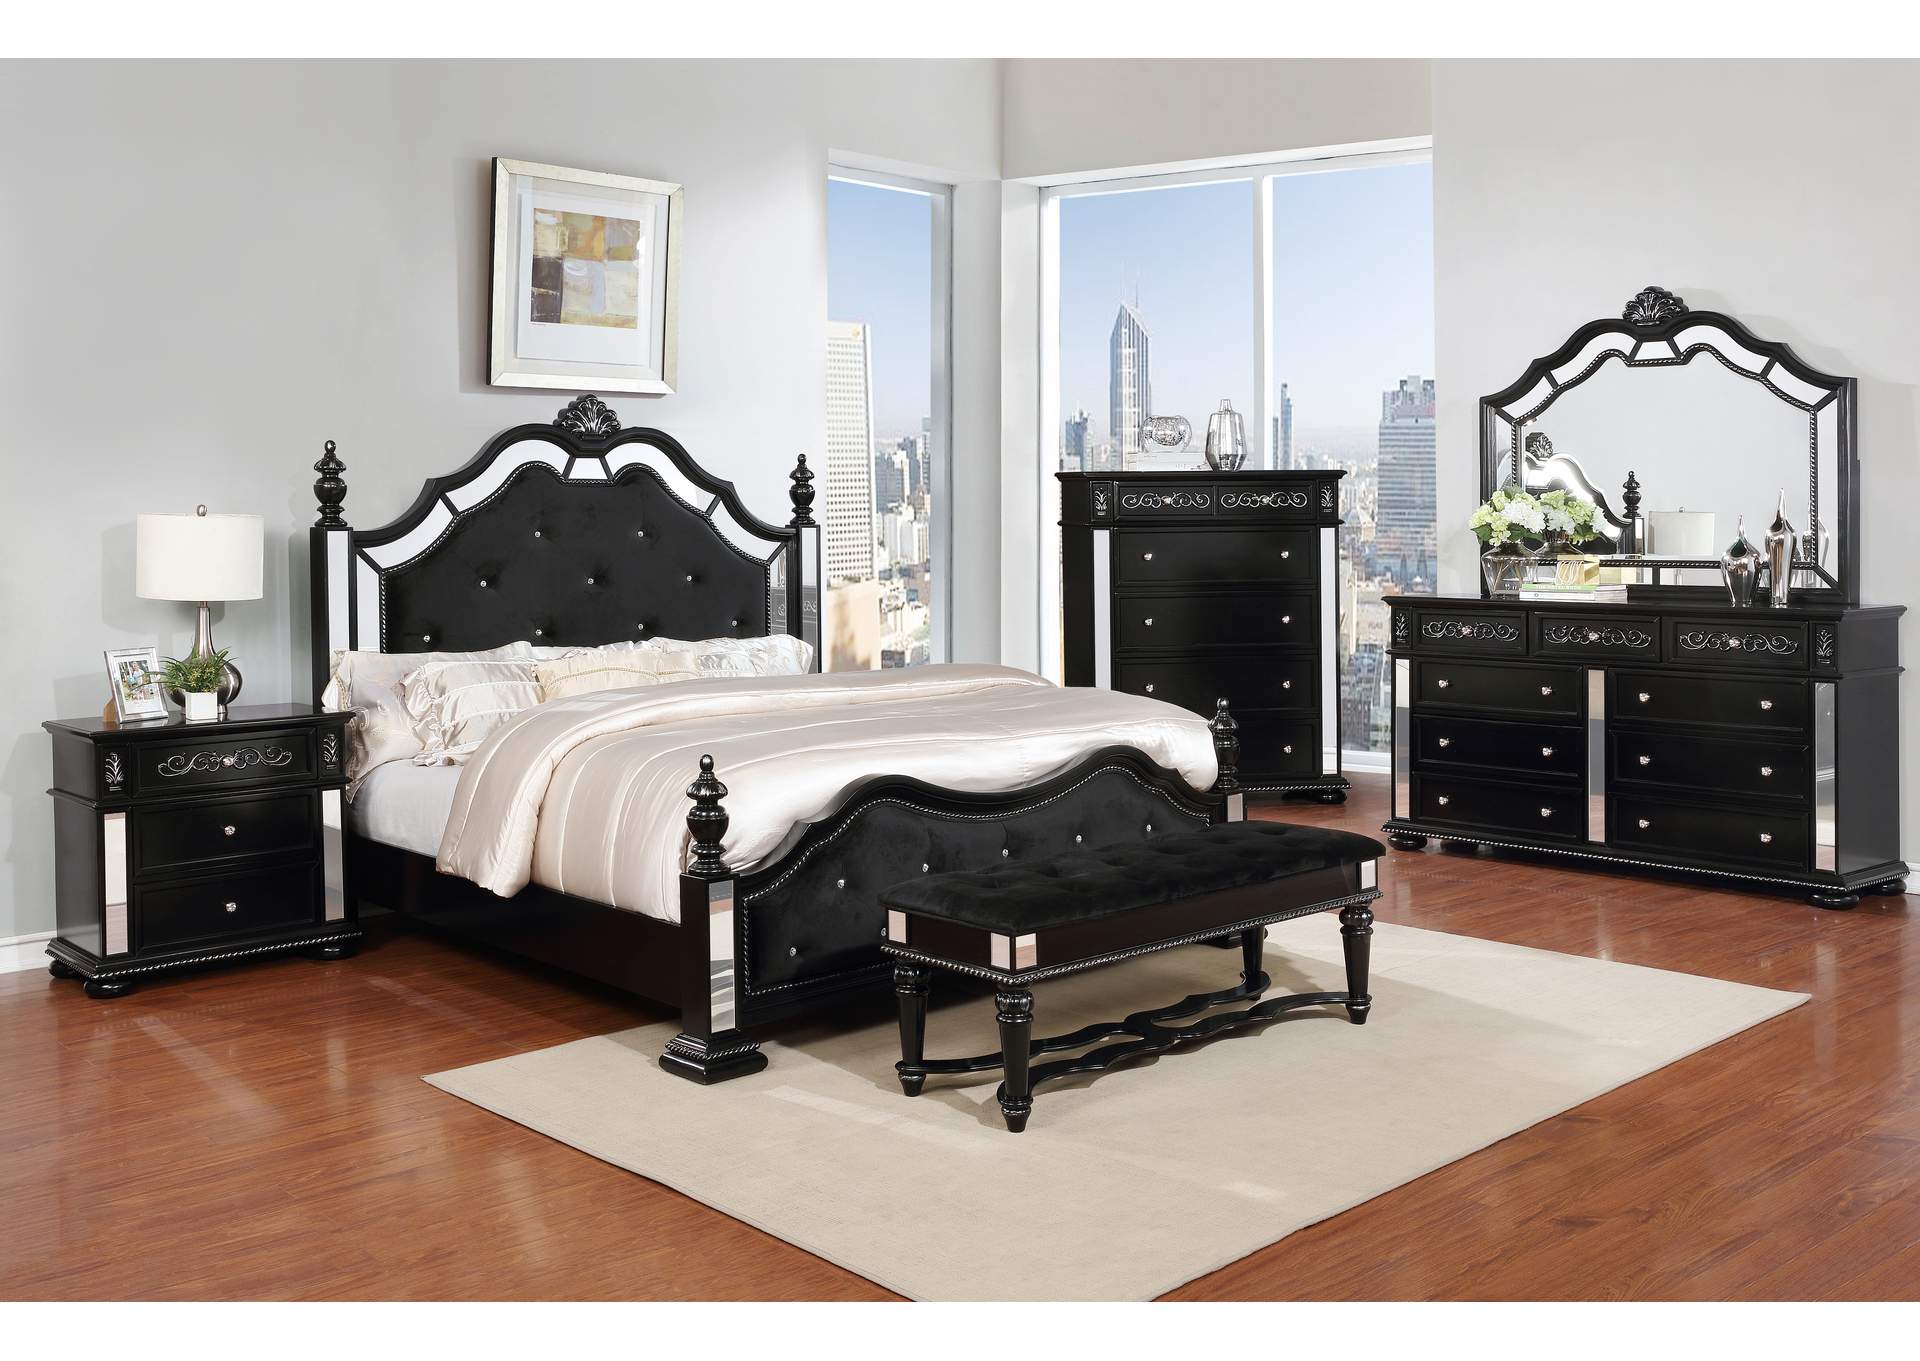 Black Panel Queen 5 Piece Bedroom Set W/ Nightstand, Chest, Dresser & Mirror,Global Trading